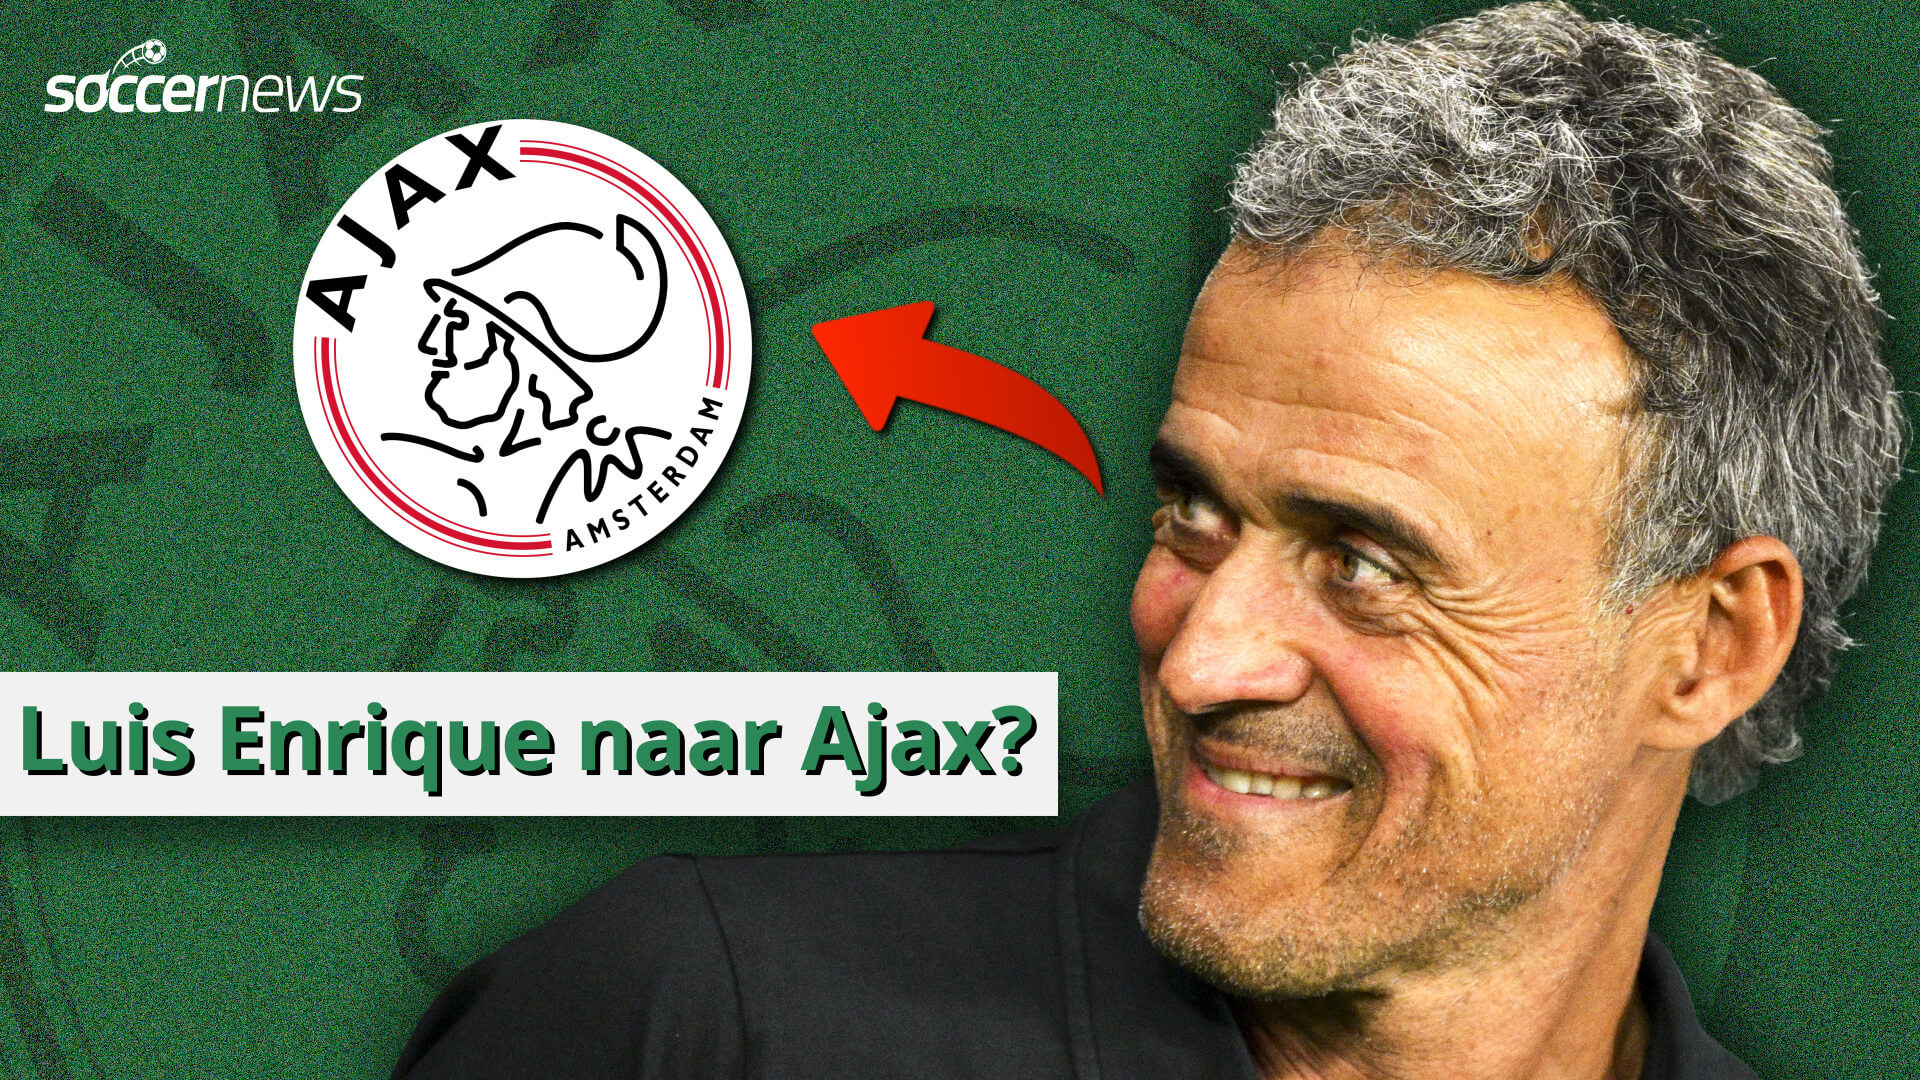 Luis Enrique nuovo allenatore dell’Ajax?  |  Es. 21 Podcast Twee Viertje